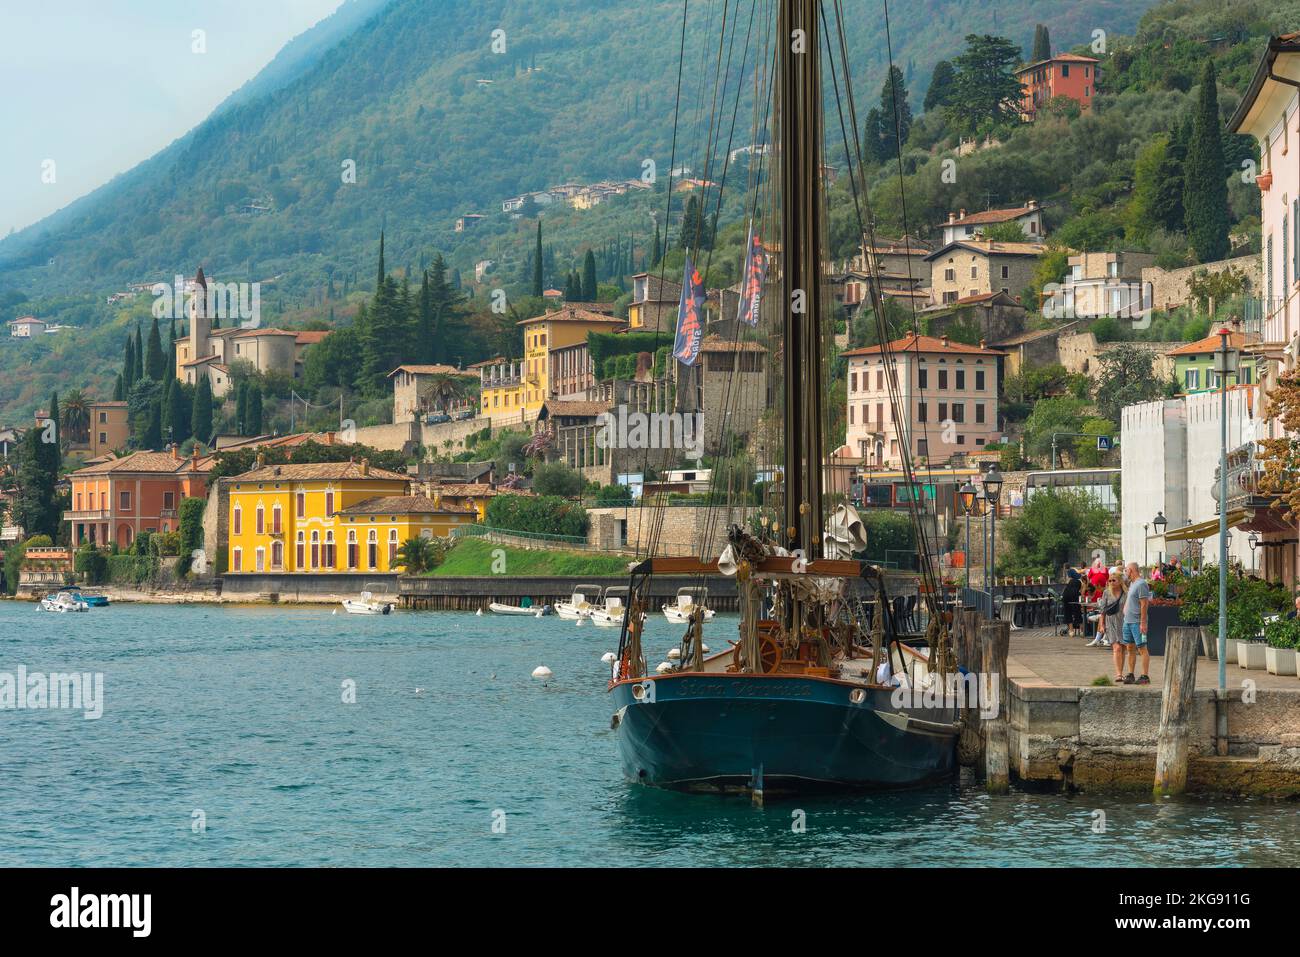 Gargnano Italia, vista en verano de la zona ribereña en la pintoresca ciudad a orillas del lago de Gargnano en el Lago Garda, Lombardía, Italia Foto de stock